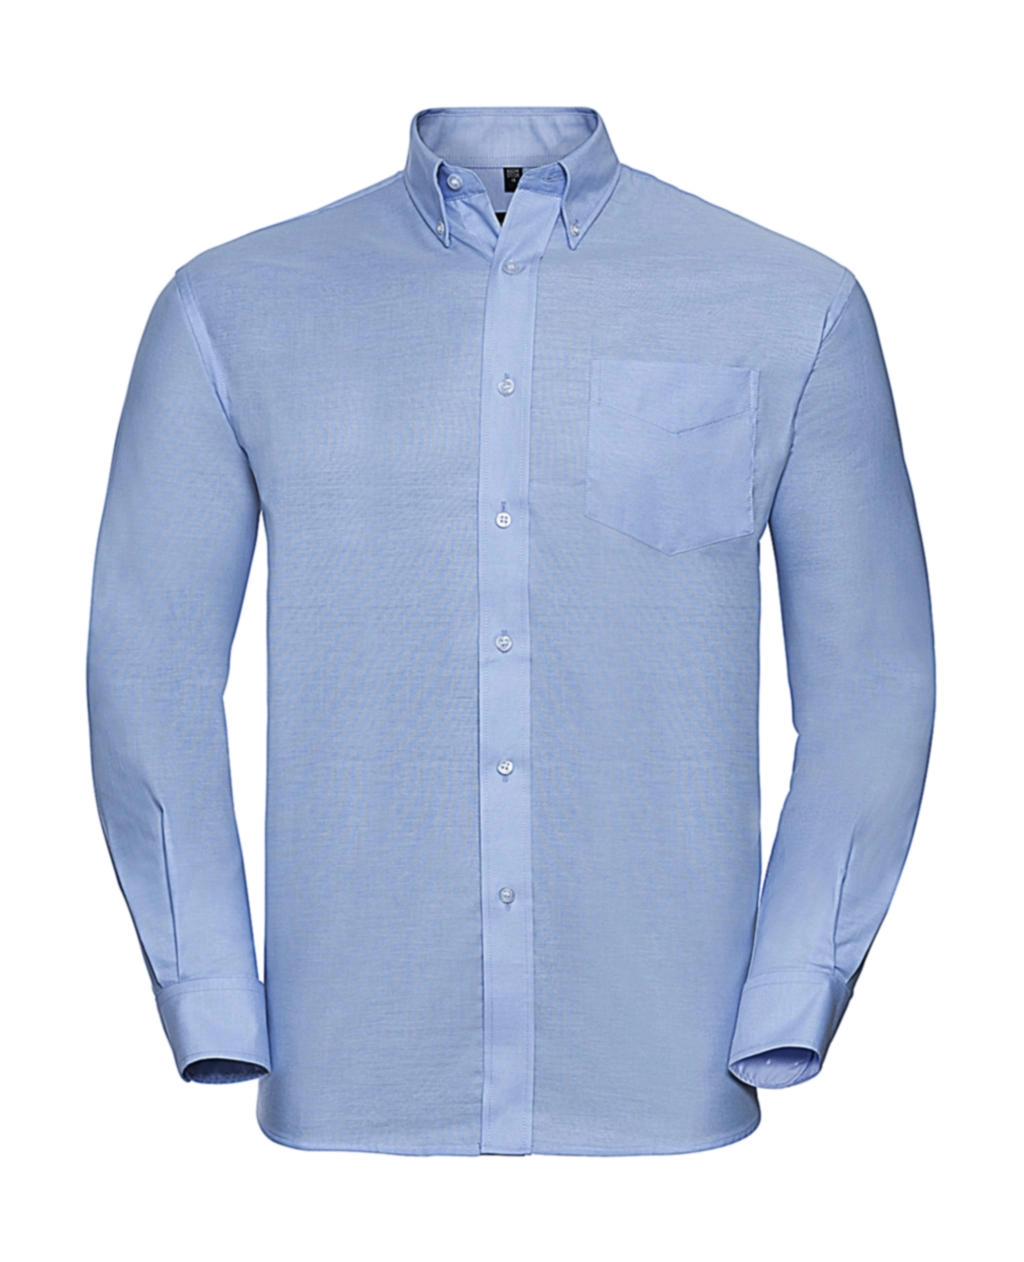 Oxford Shirt LS zum Besticken und Bedrucken in der Farbe Oxford Blue mit Ihren Logo, Schriftzug oder Motiv.